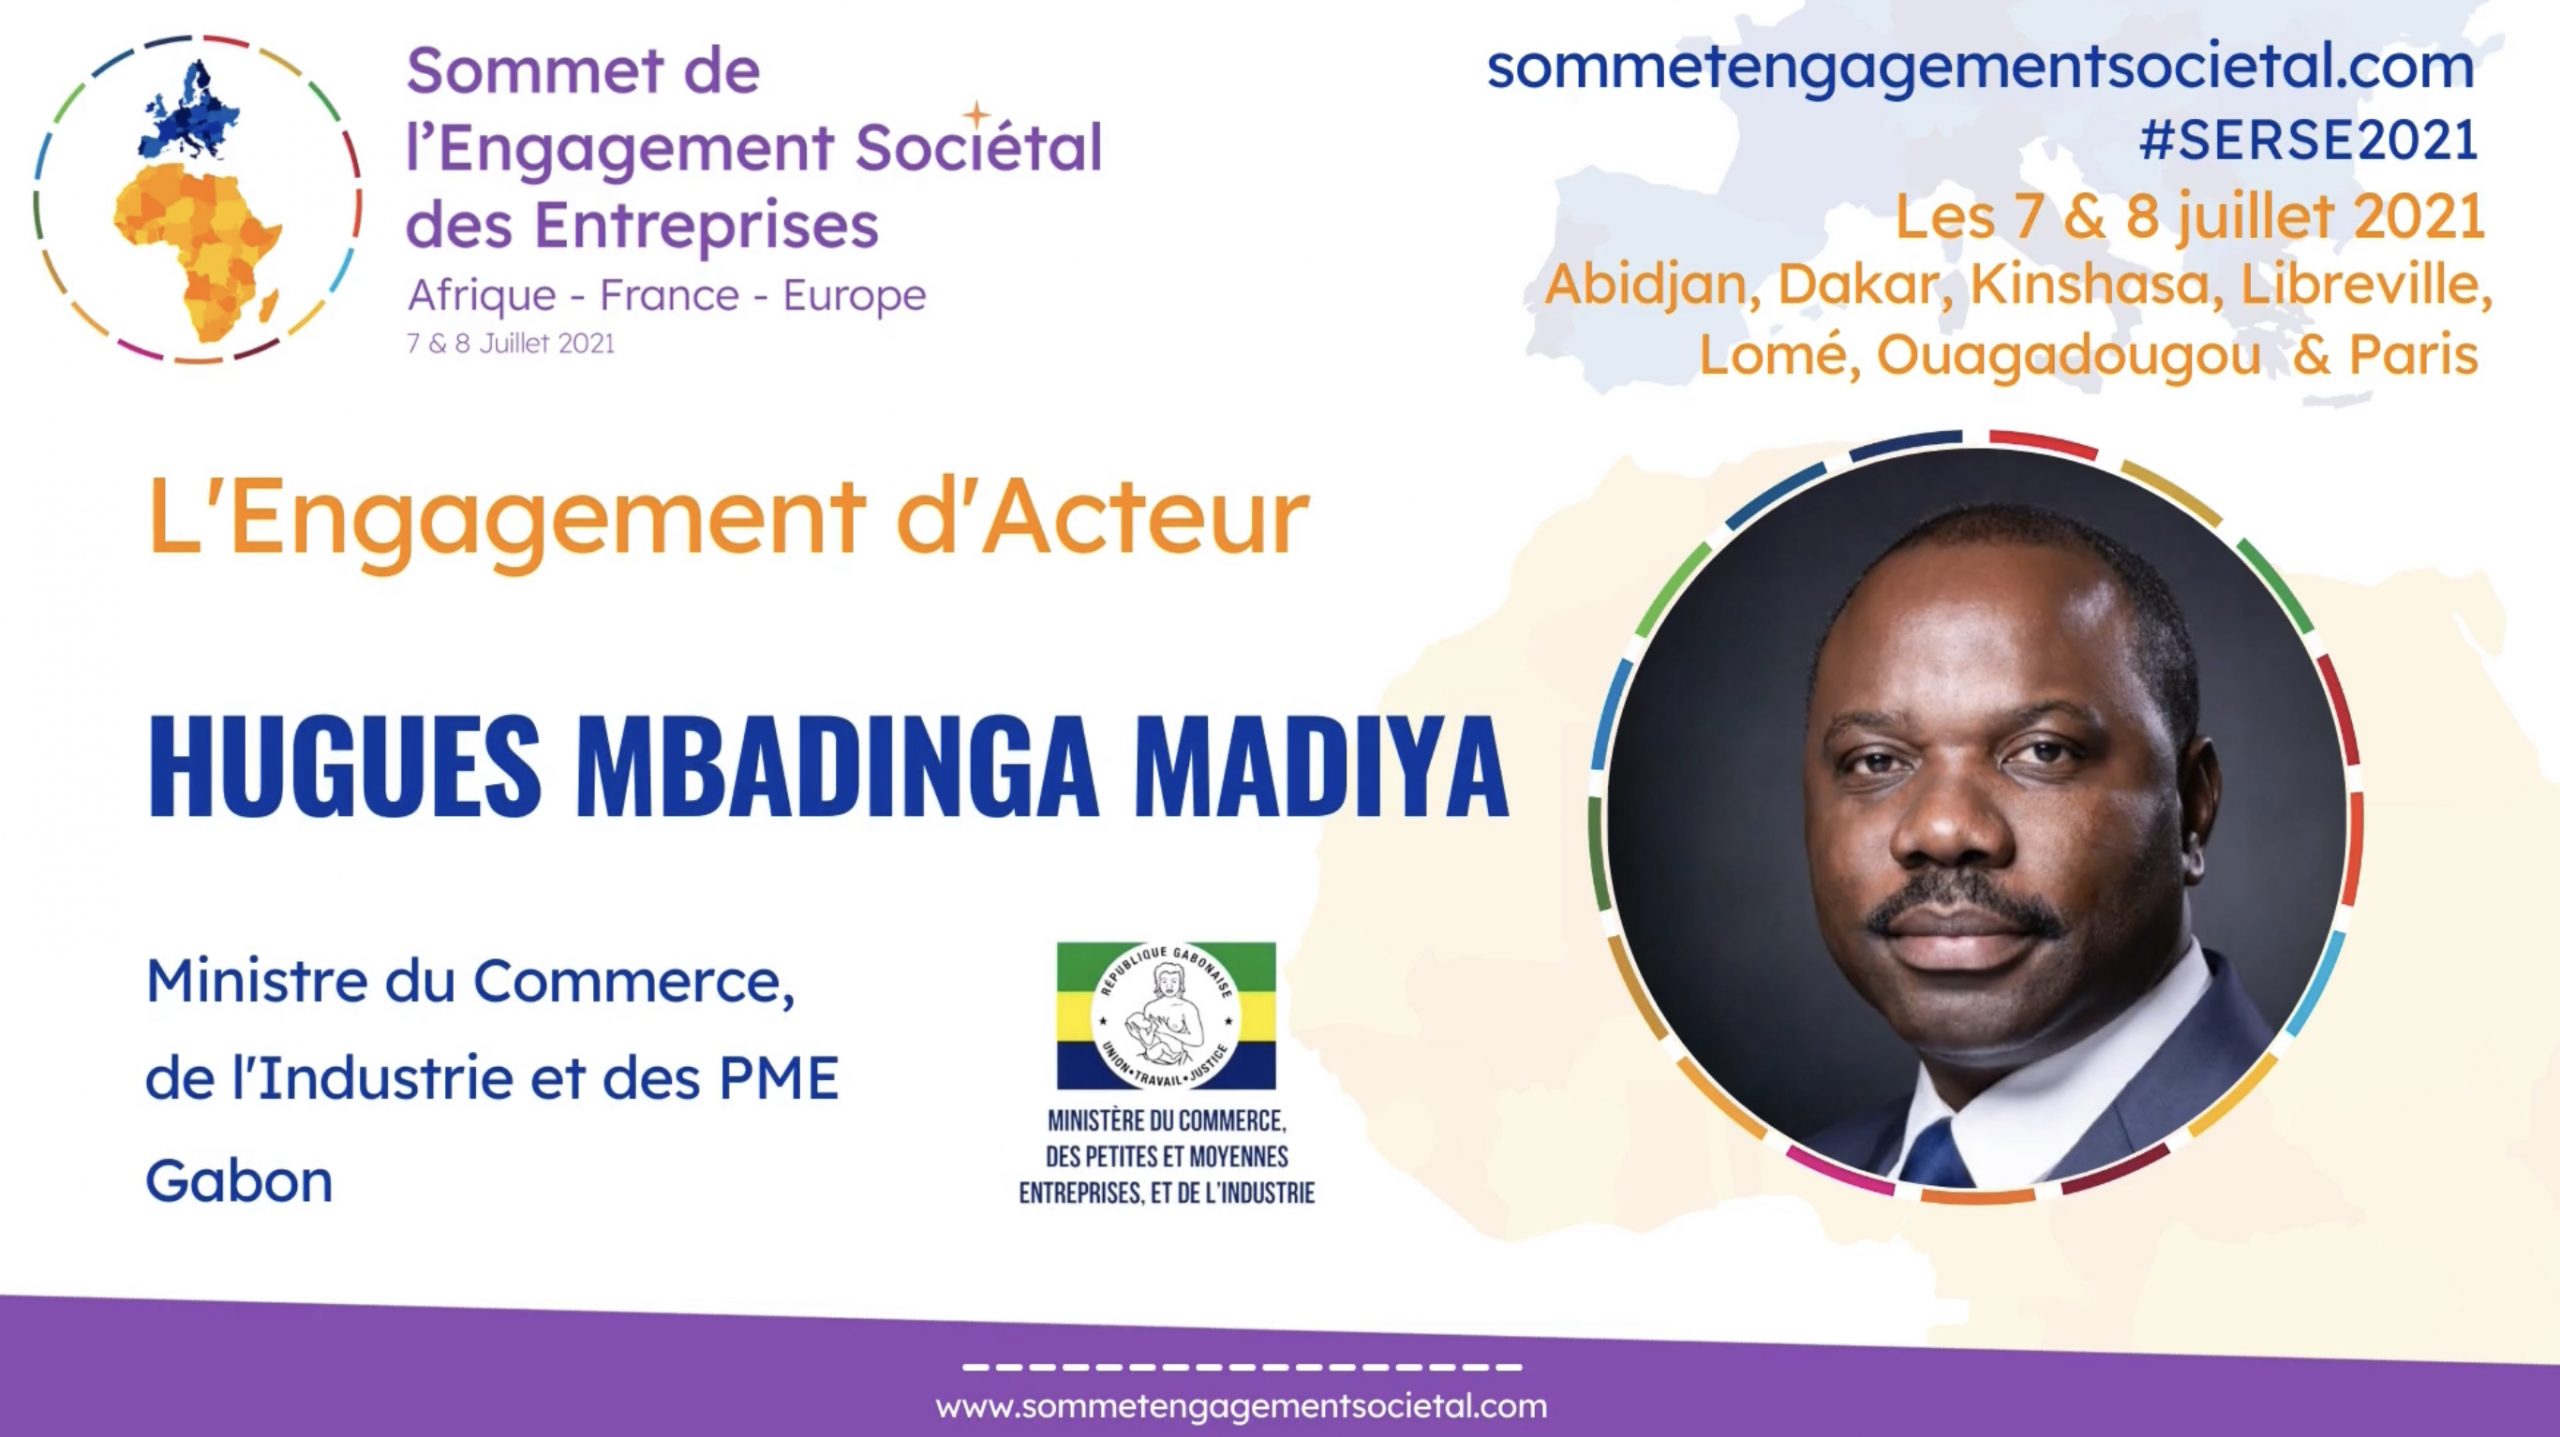 Retrouvez la vision d’Hugues Mbadinga Madiya en amont du panel porté par le Gabon, la Prospérité Partagée